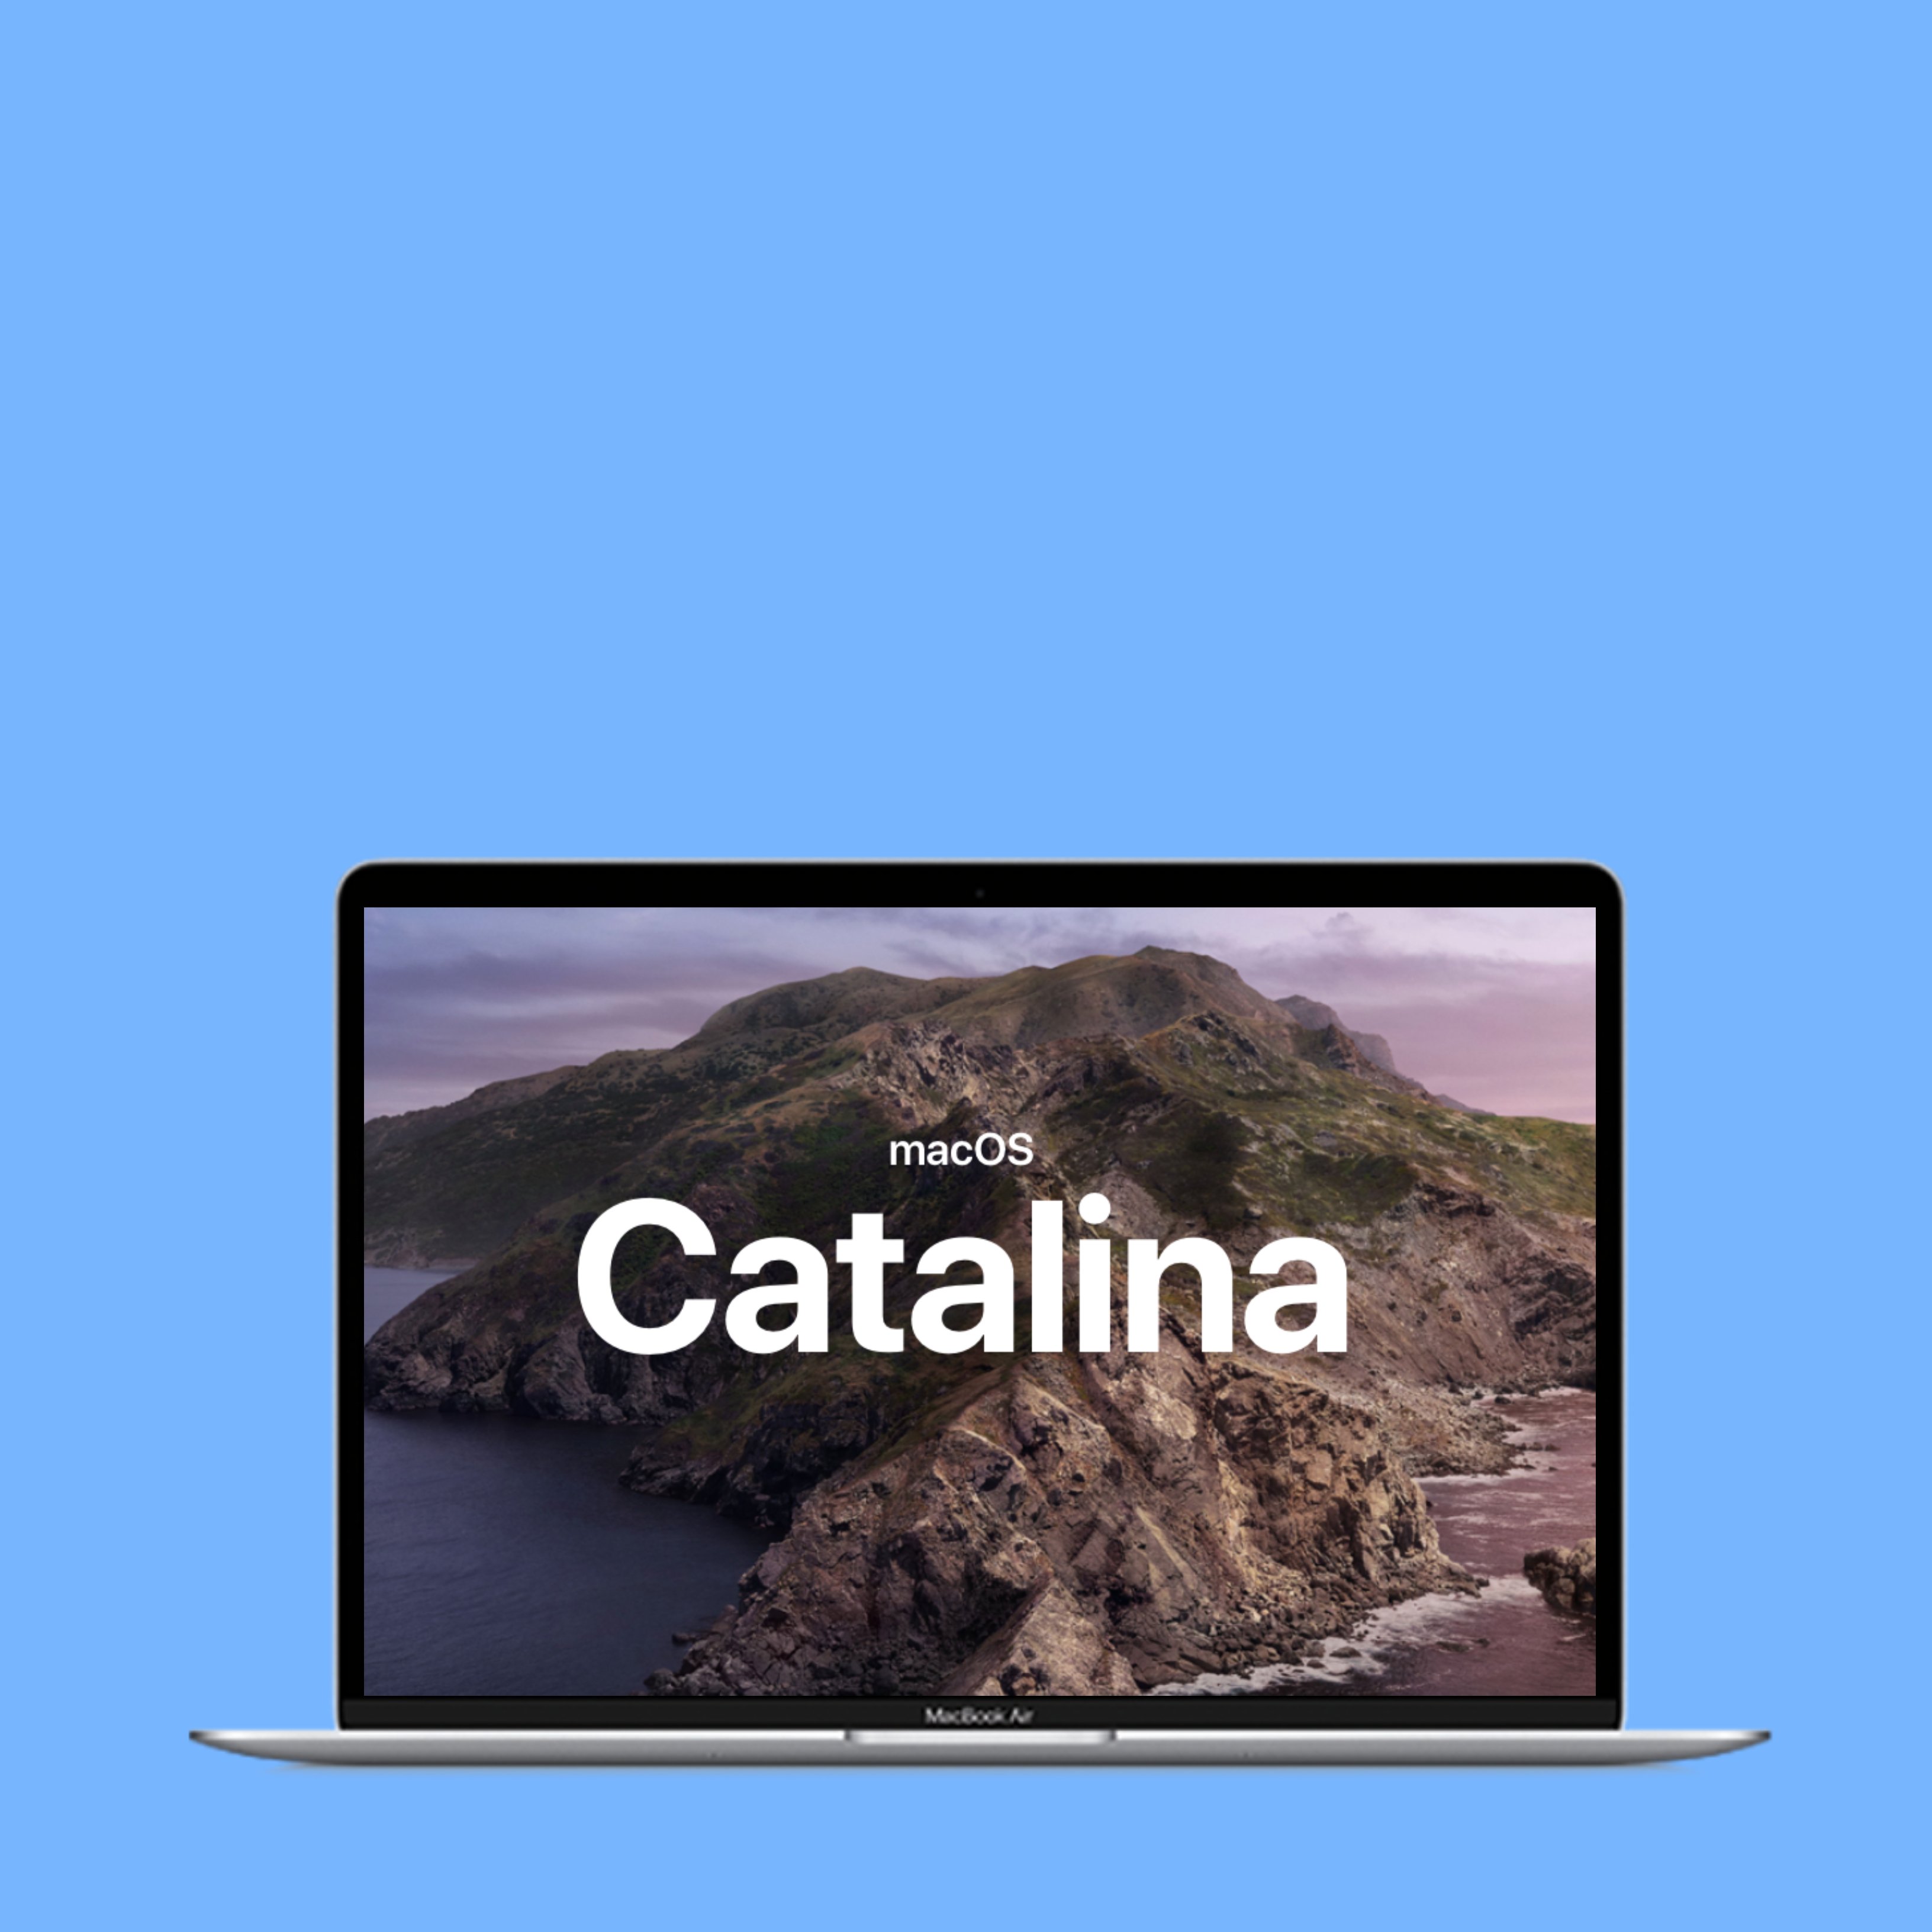 Més novetats Apple: hola a macOS Catalina i adeu a iTunes als Mac